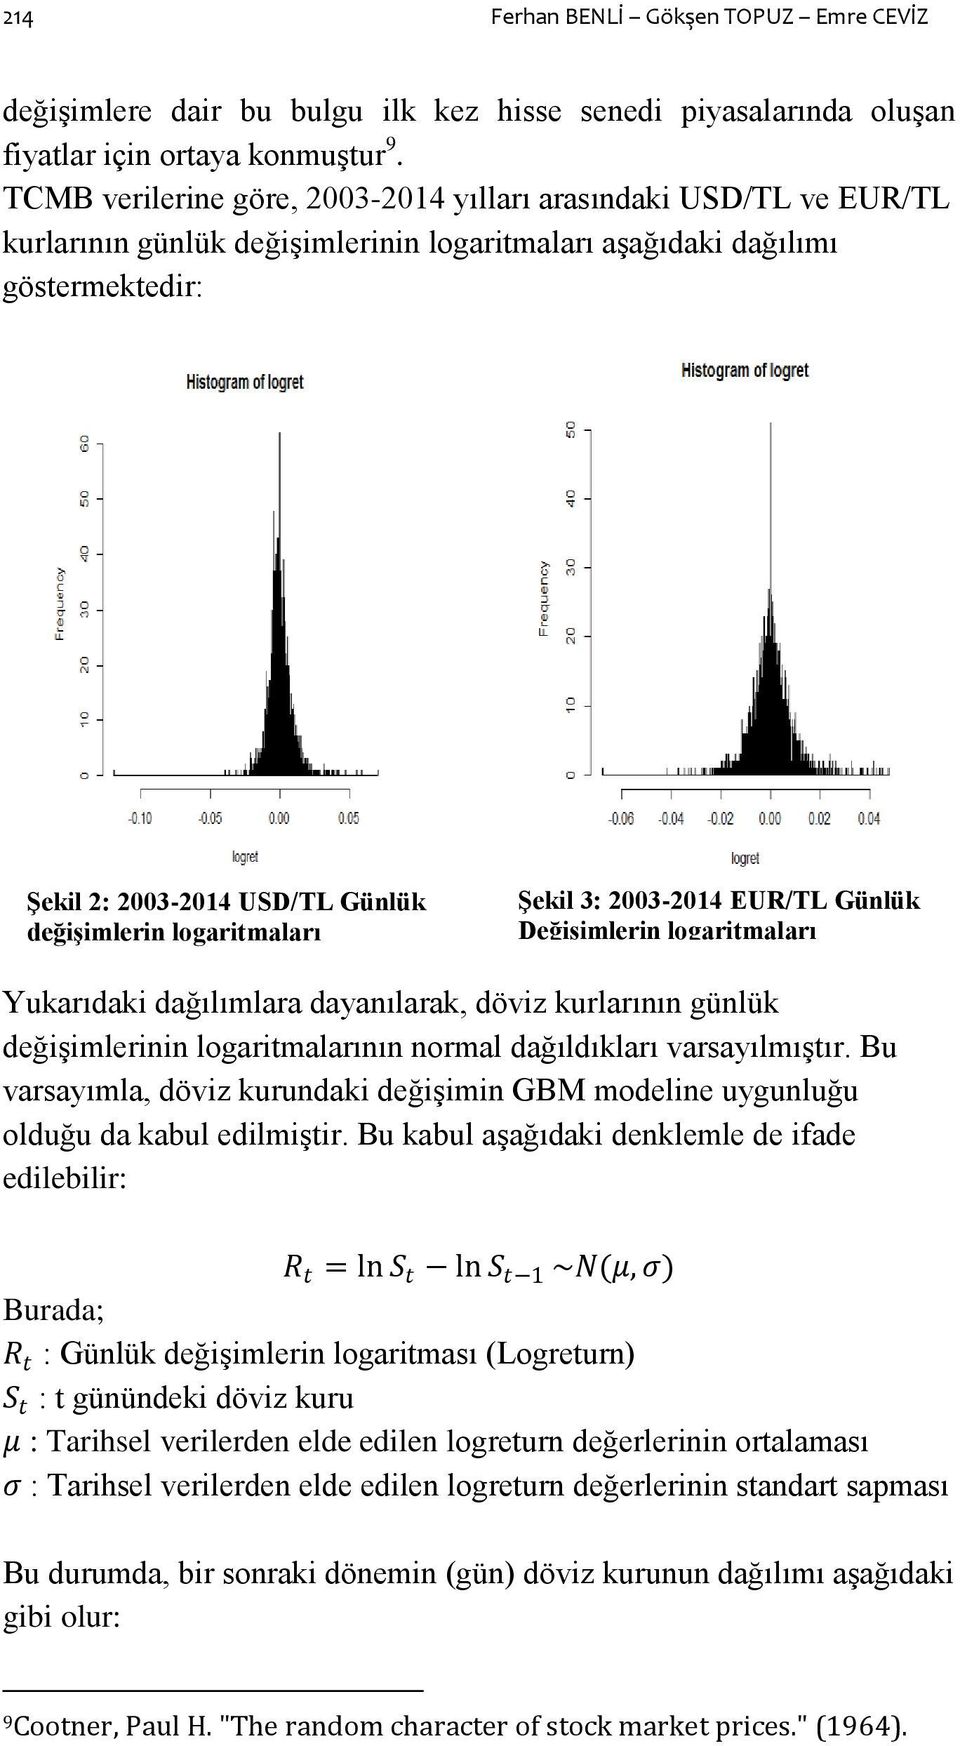 logaritmaları ġekil 3: 2003-2014 EUR/TL Günlük DeğiĢimlerin logaritmaları Yukarıdaki dağılımlara dayanılarak, döviz kurlarının günlük değiģimlerinin logaritmalarının normal dağıldıkları